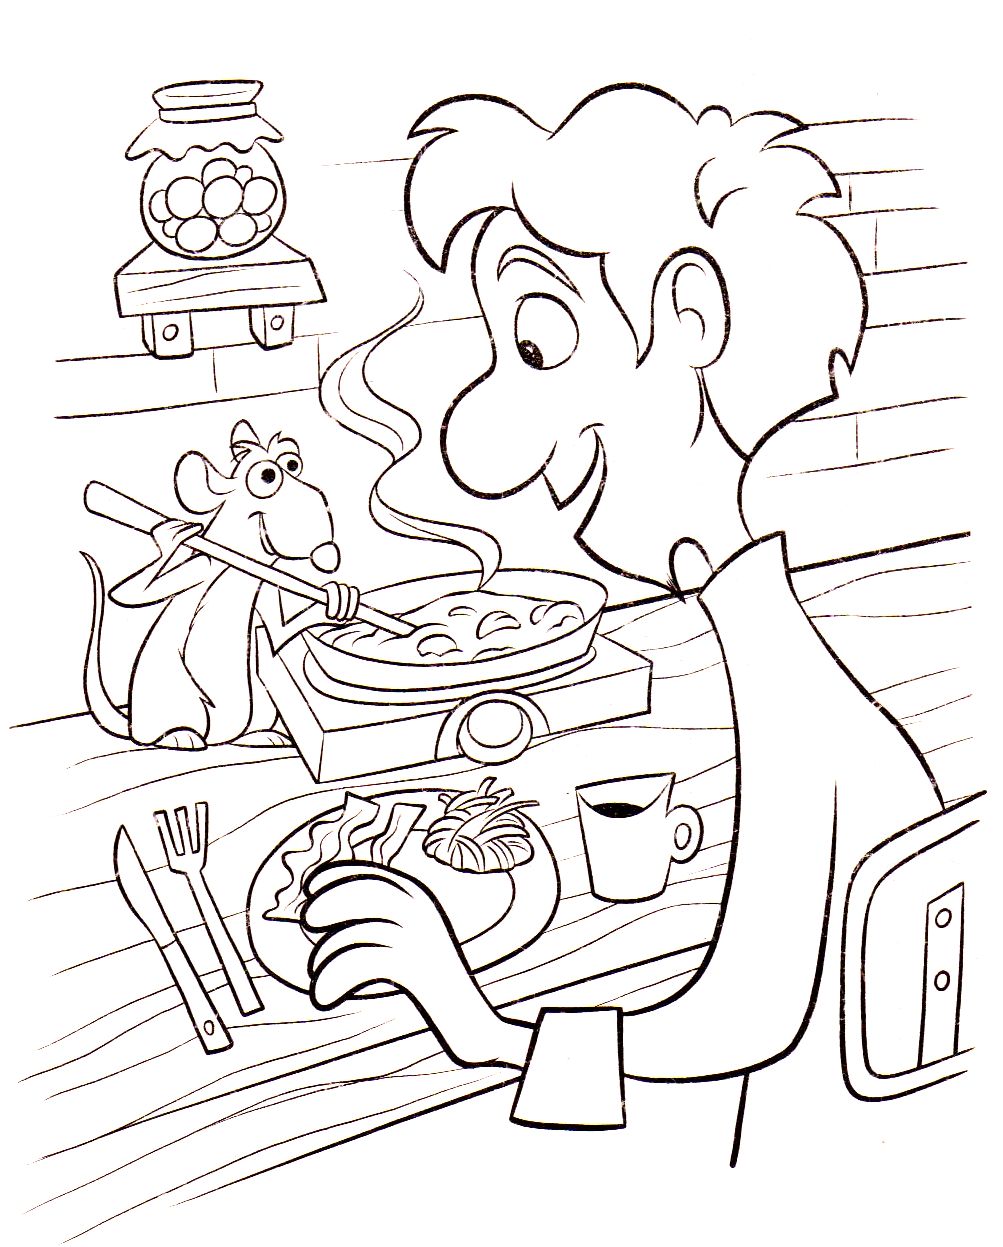 Uma boa refeição cozinhada por Linguini e o seu amigo Rémy, o rato